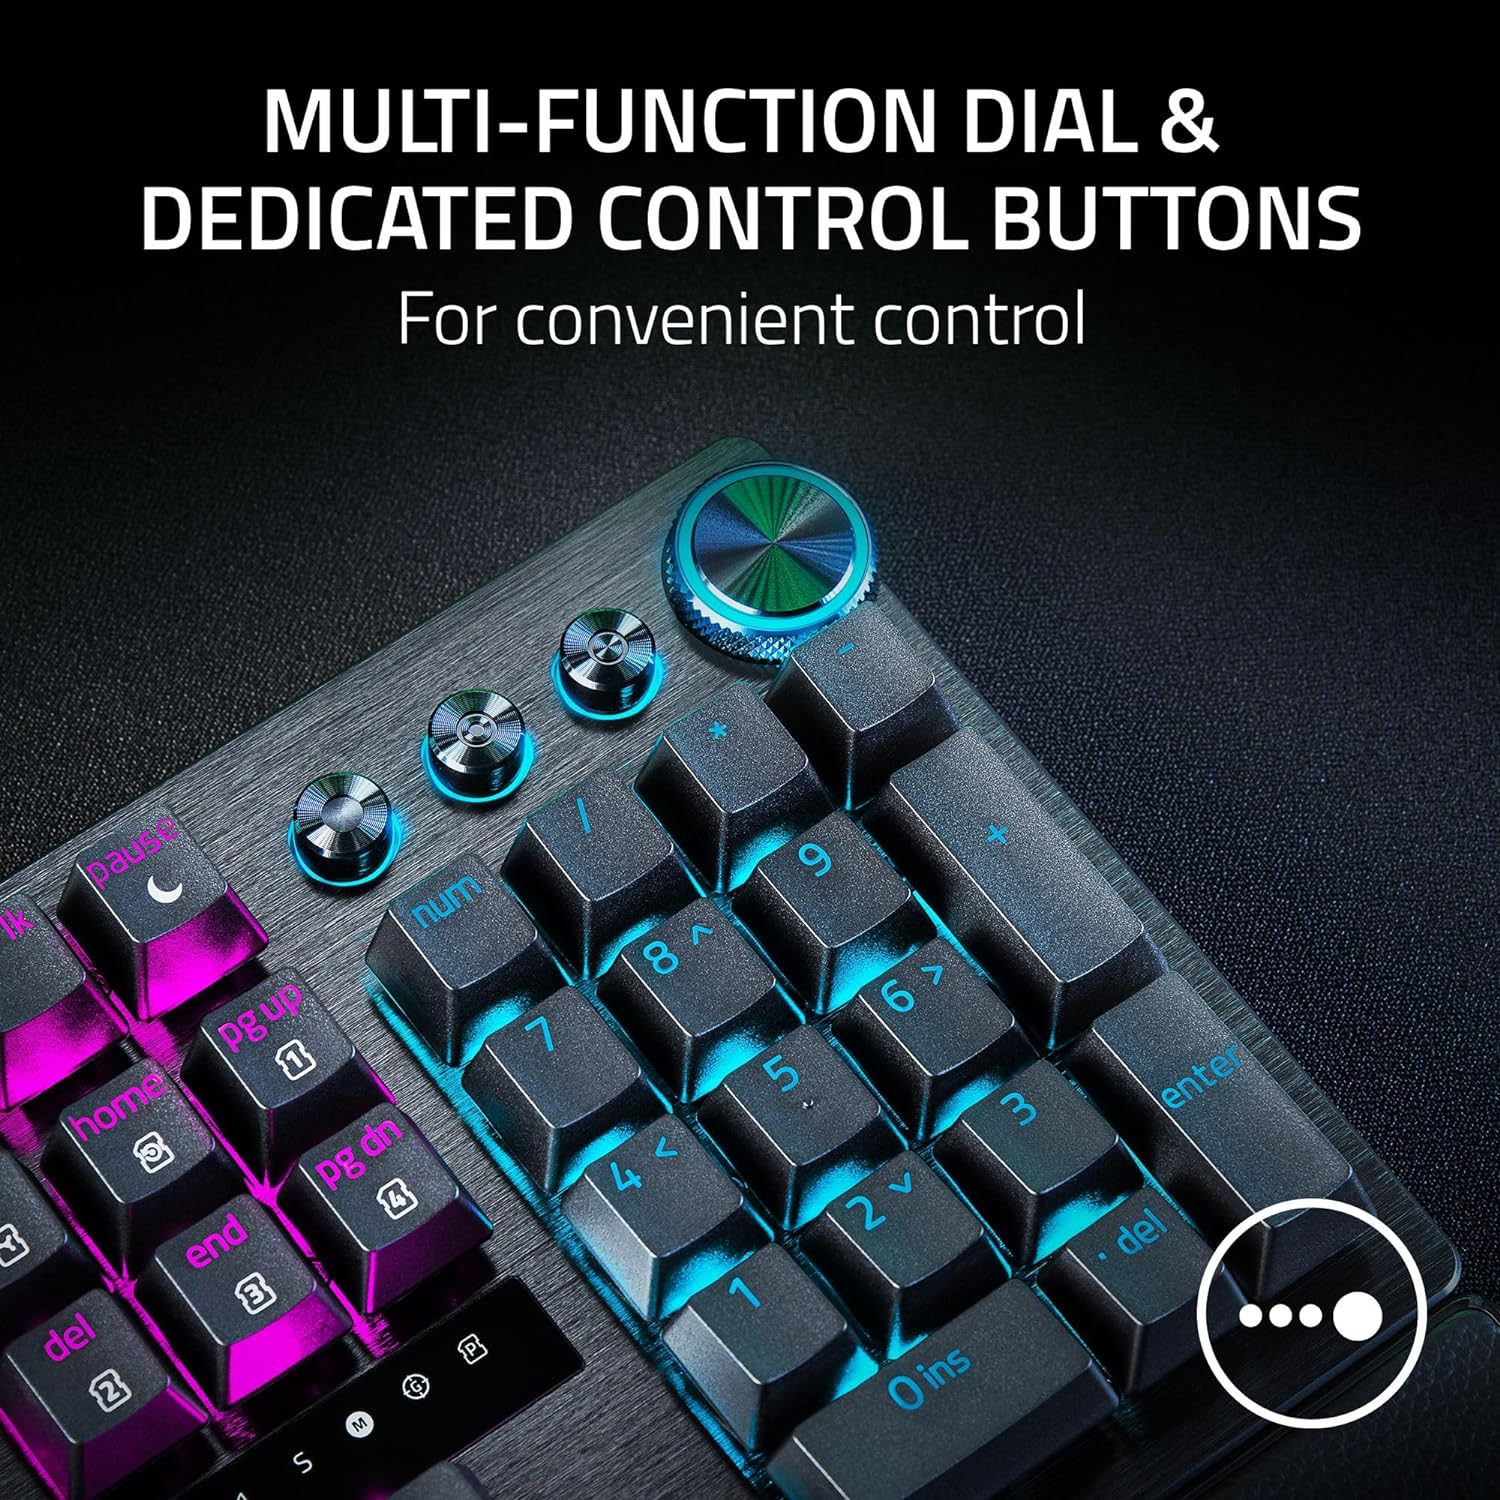 Bàn phím Razer Huntsman V3 Pro - Analog Optical Esports Keyboard_Mới, hàng chính hãng